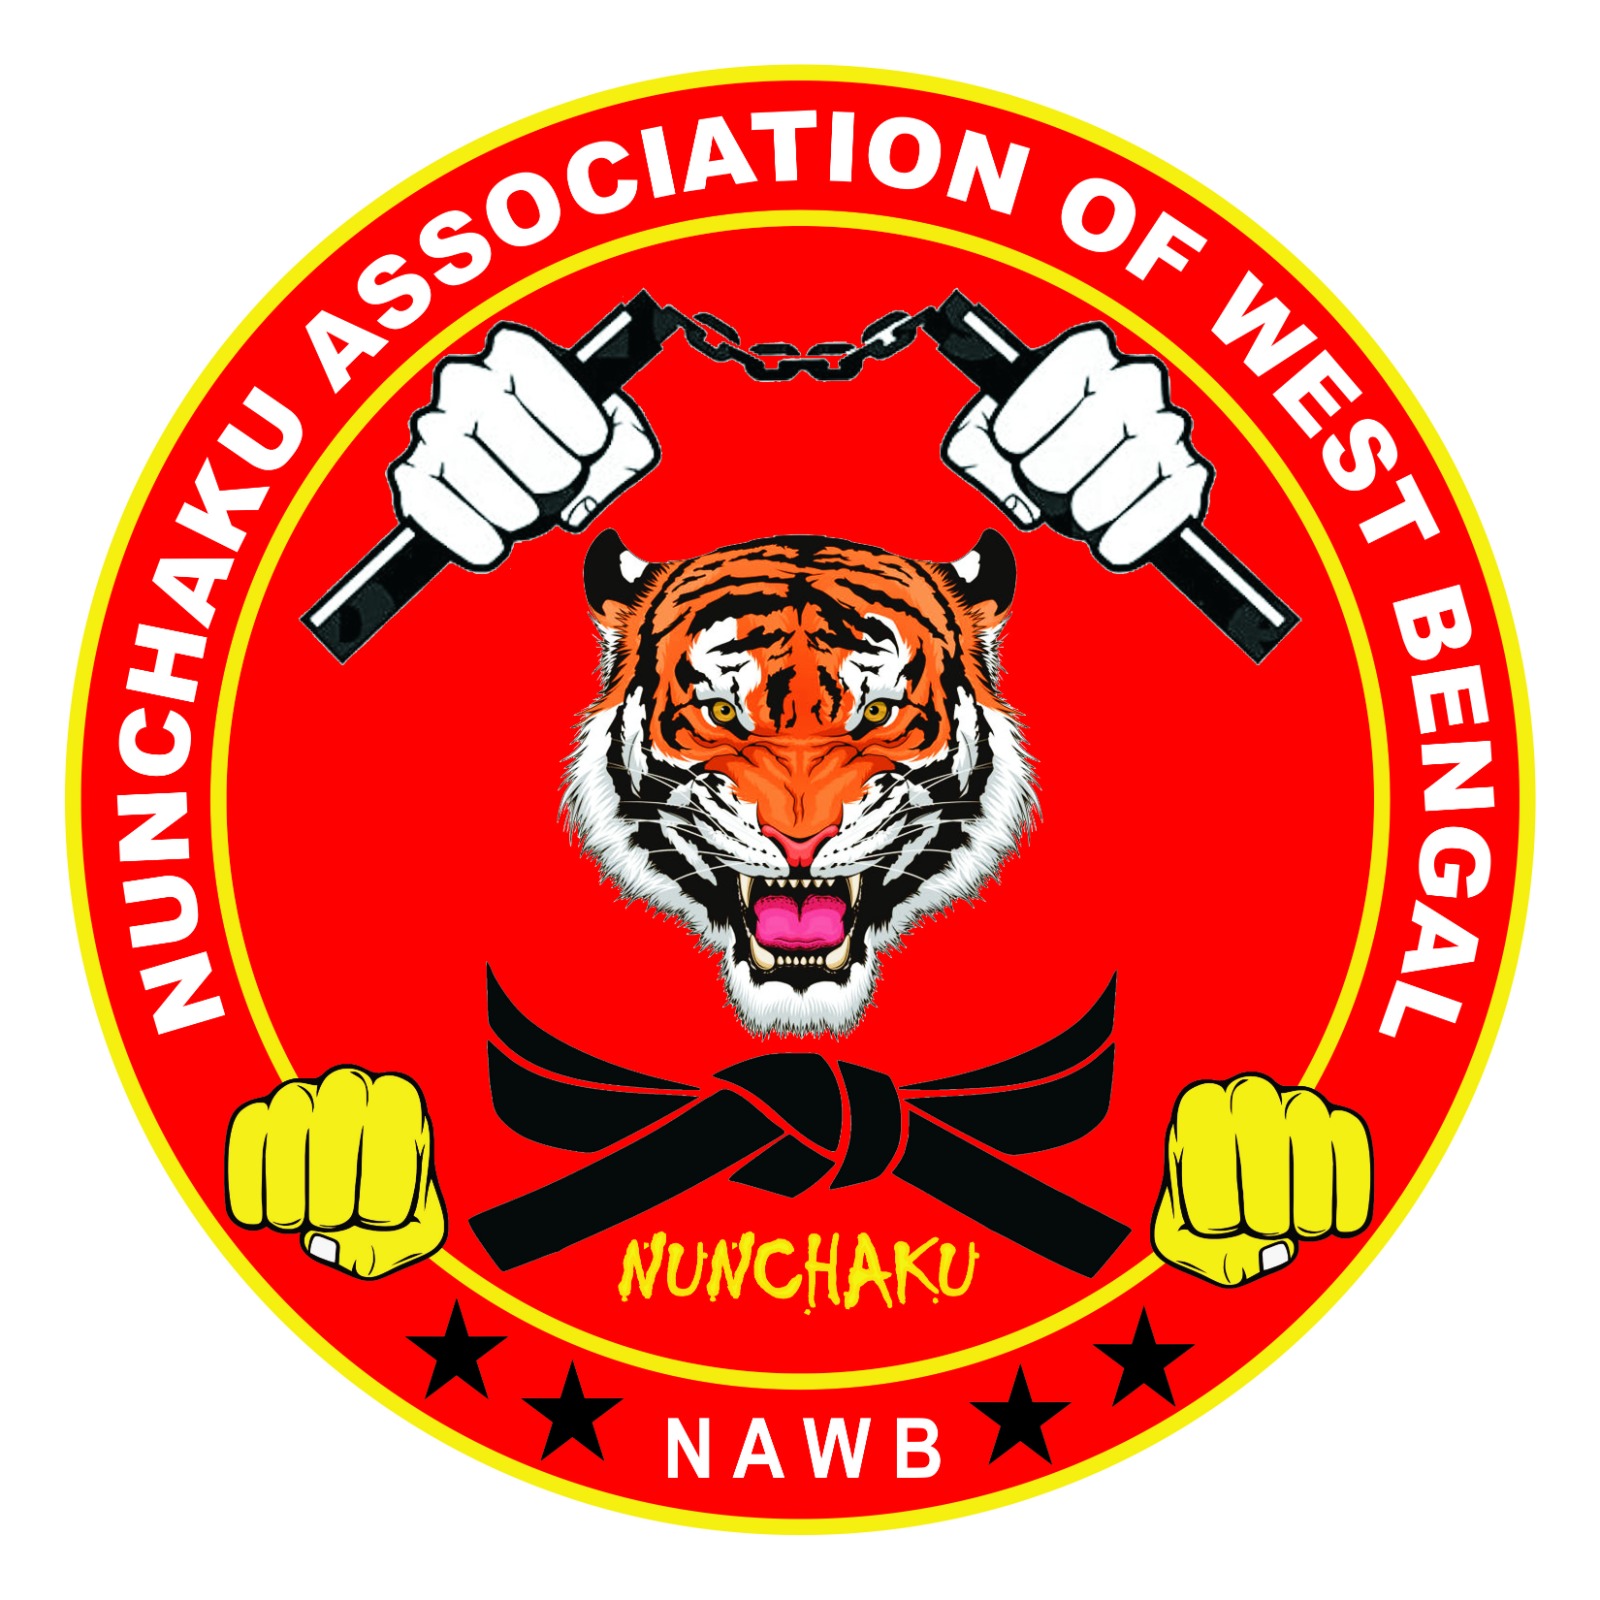 Nunchaku Association of West Bengal